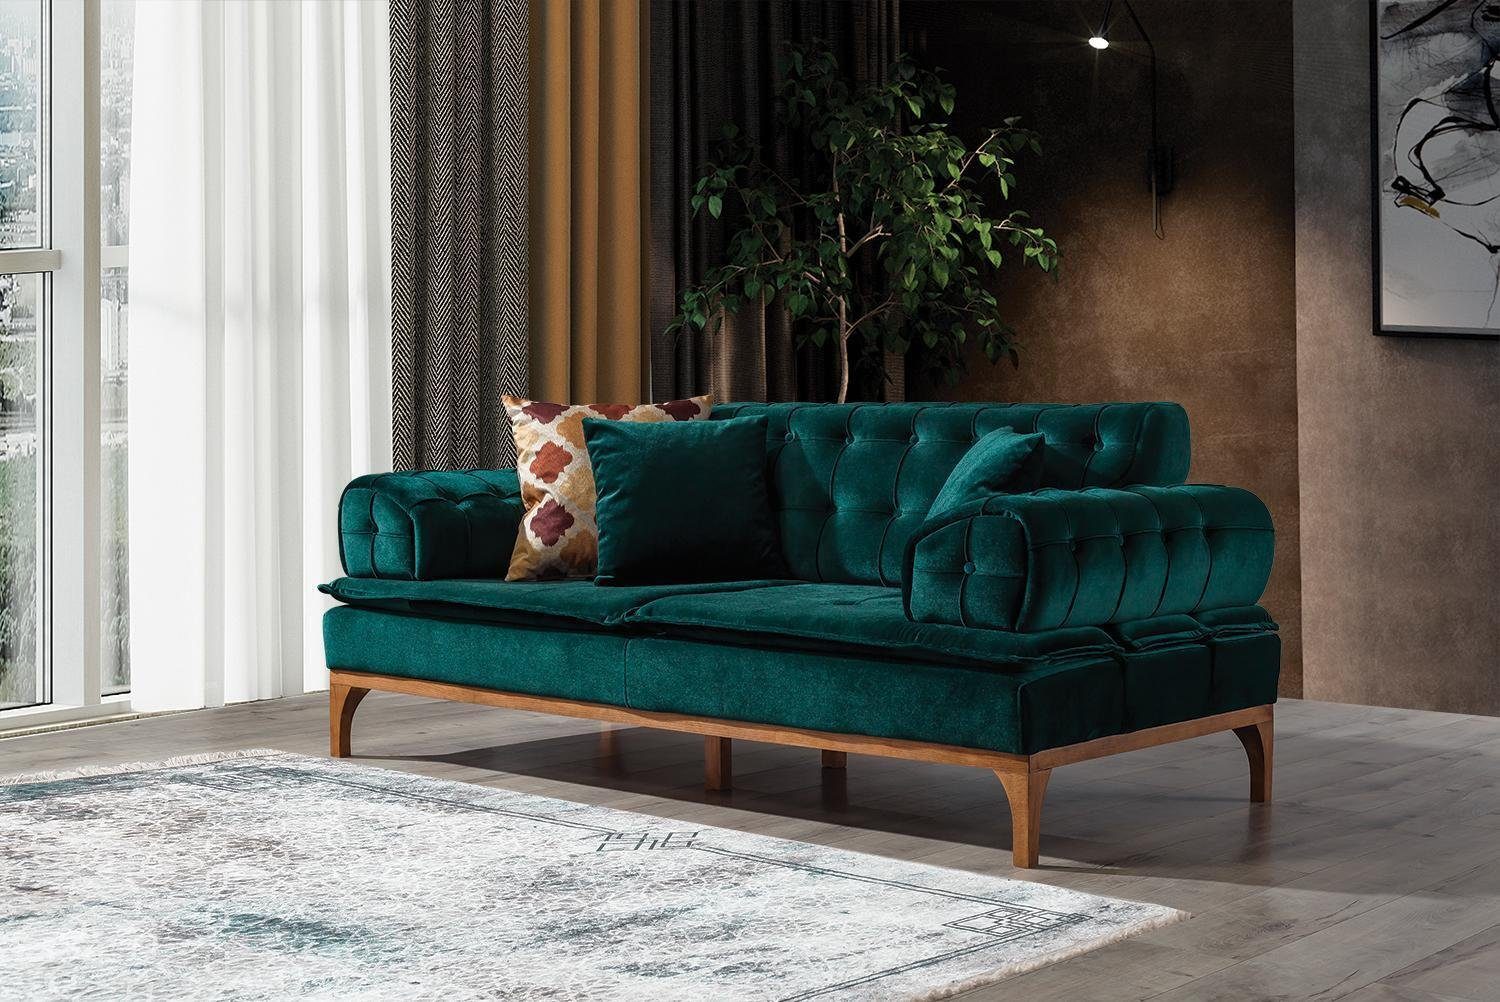 JVmoebel 3-Sitzer Luxus Sofa 3 Sitzer Sofas Sitz Stoff Design Möbel Stil Textil Neu grün